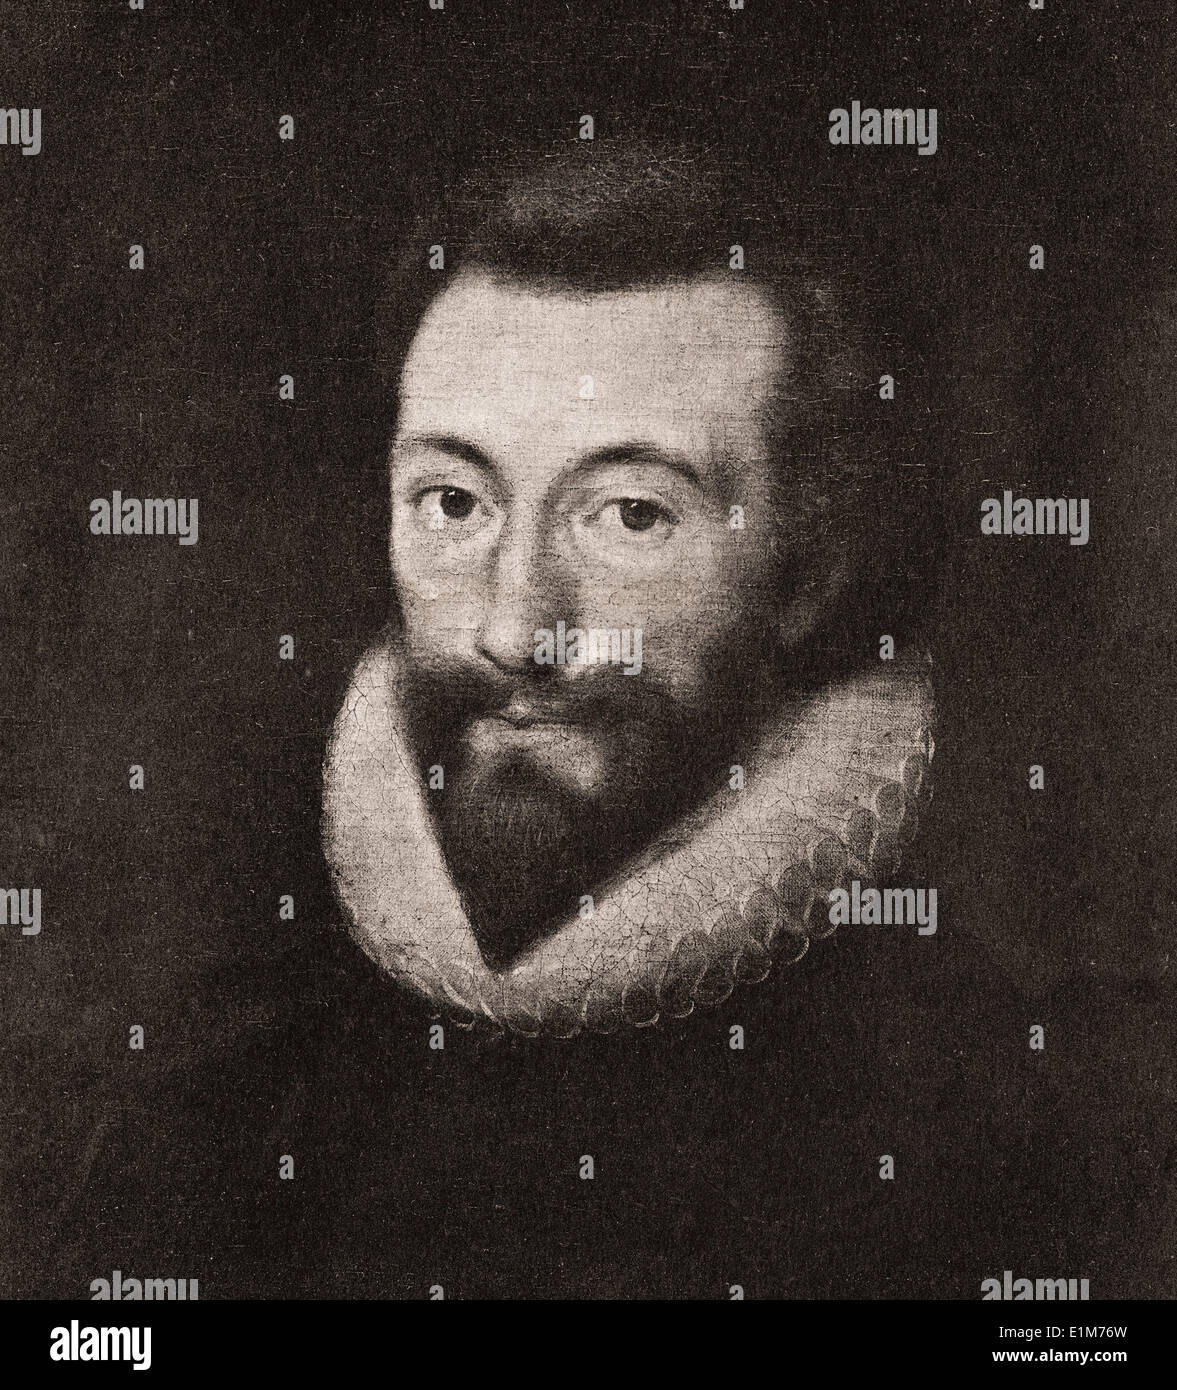 John Donne, im Alter von 44. John Donne, 1572-1631. Englischen metaphysischen Dichter, Satiriker, Rechtsanwalt und Kleriker. Stockfoto